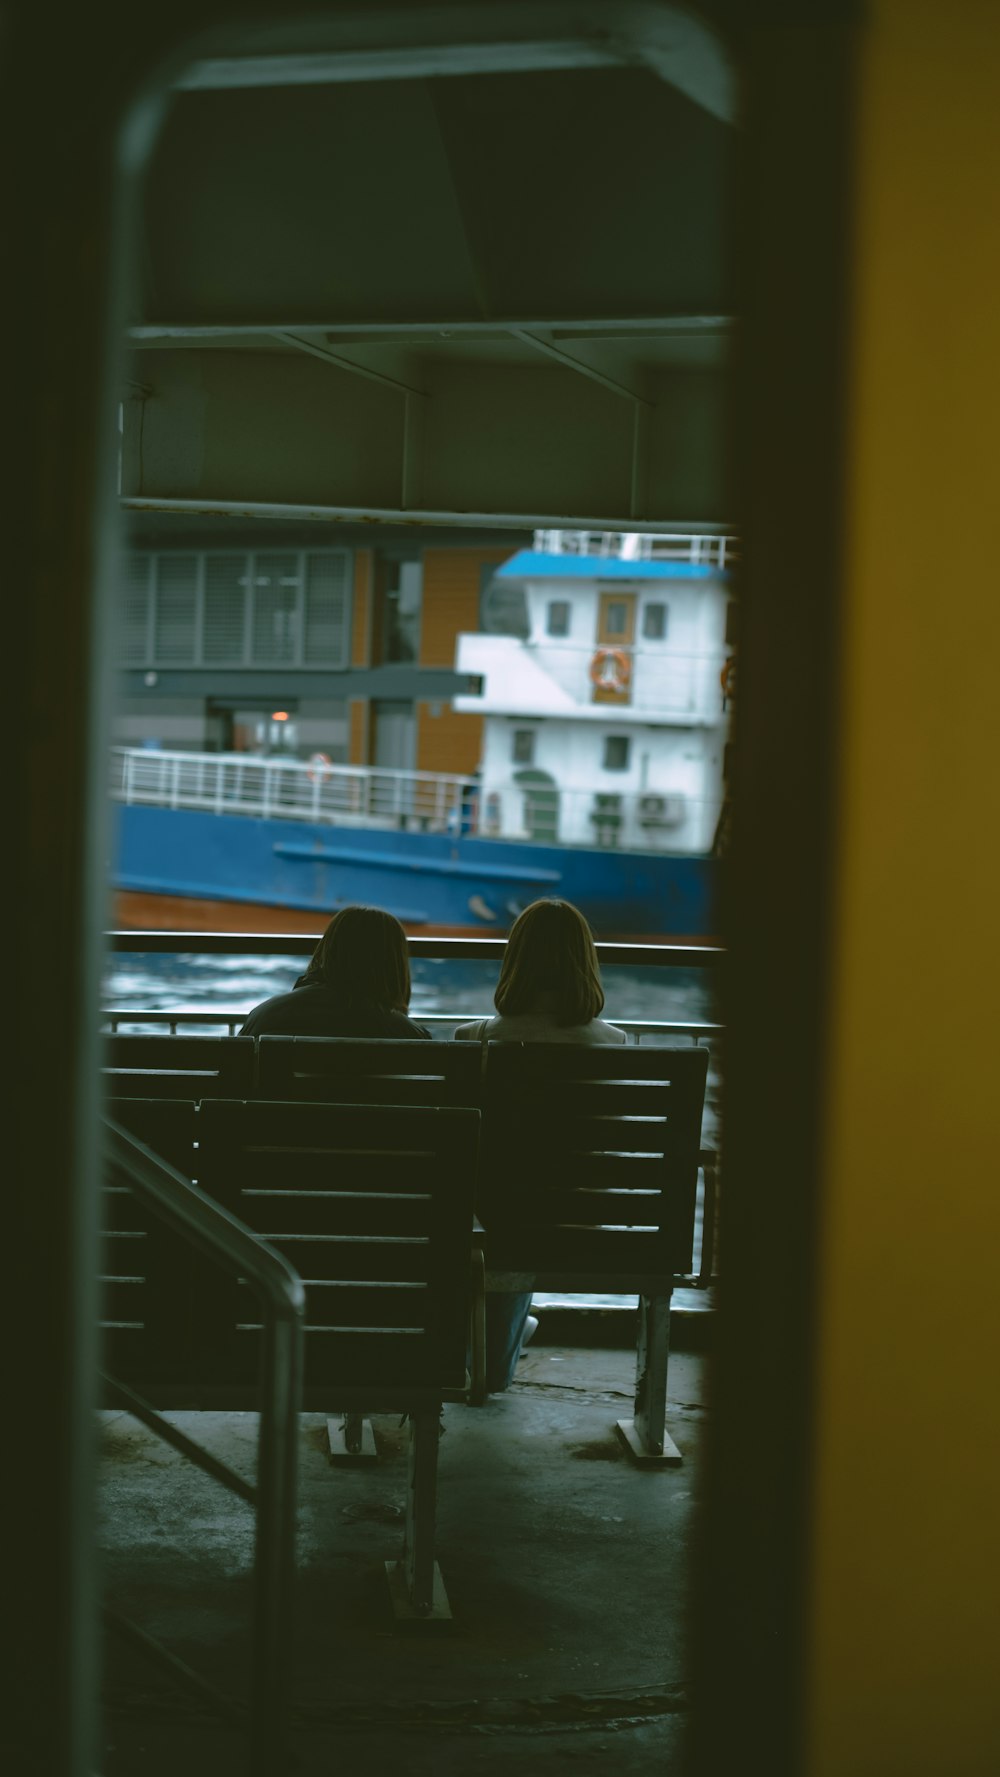 Dos personas sentadas en un banco en una estación de tren